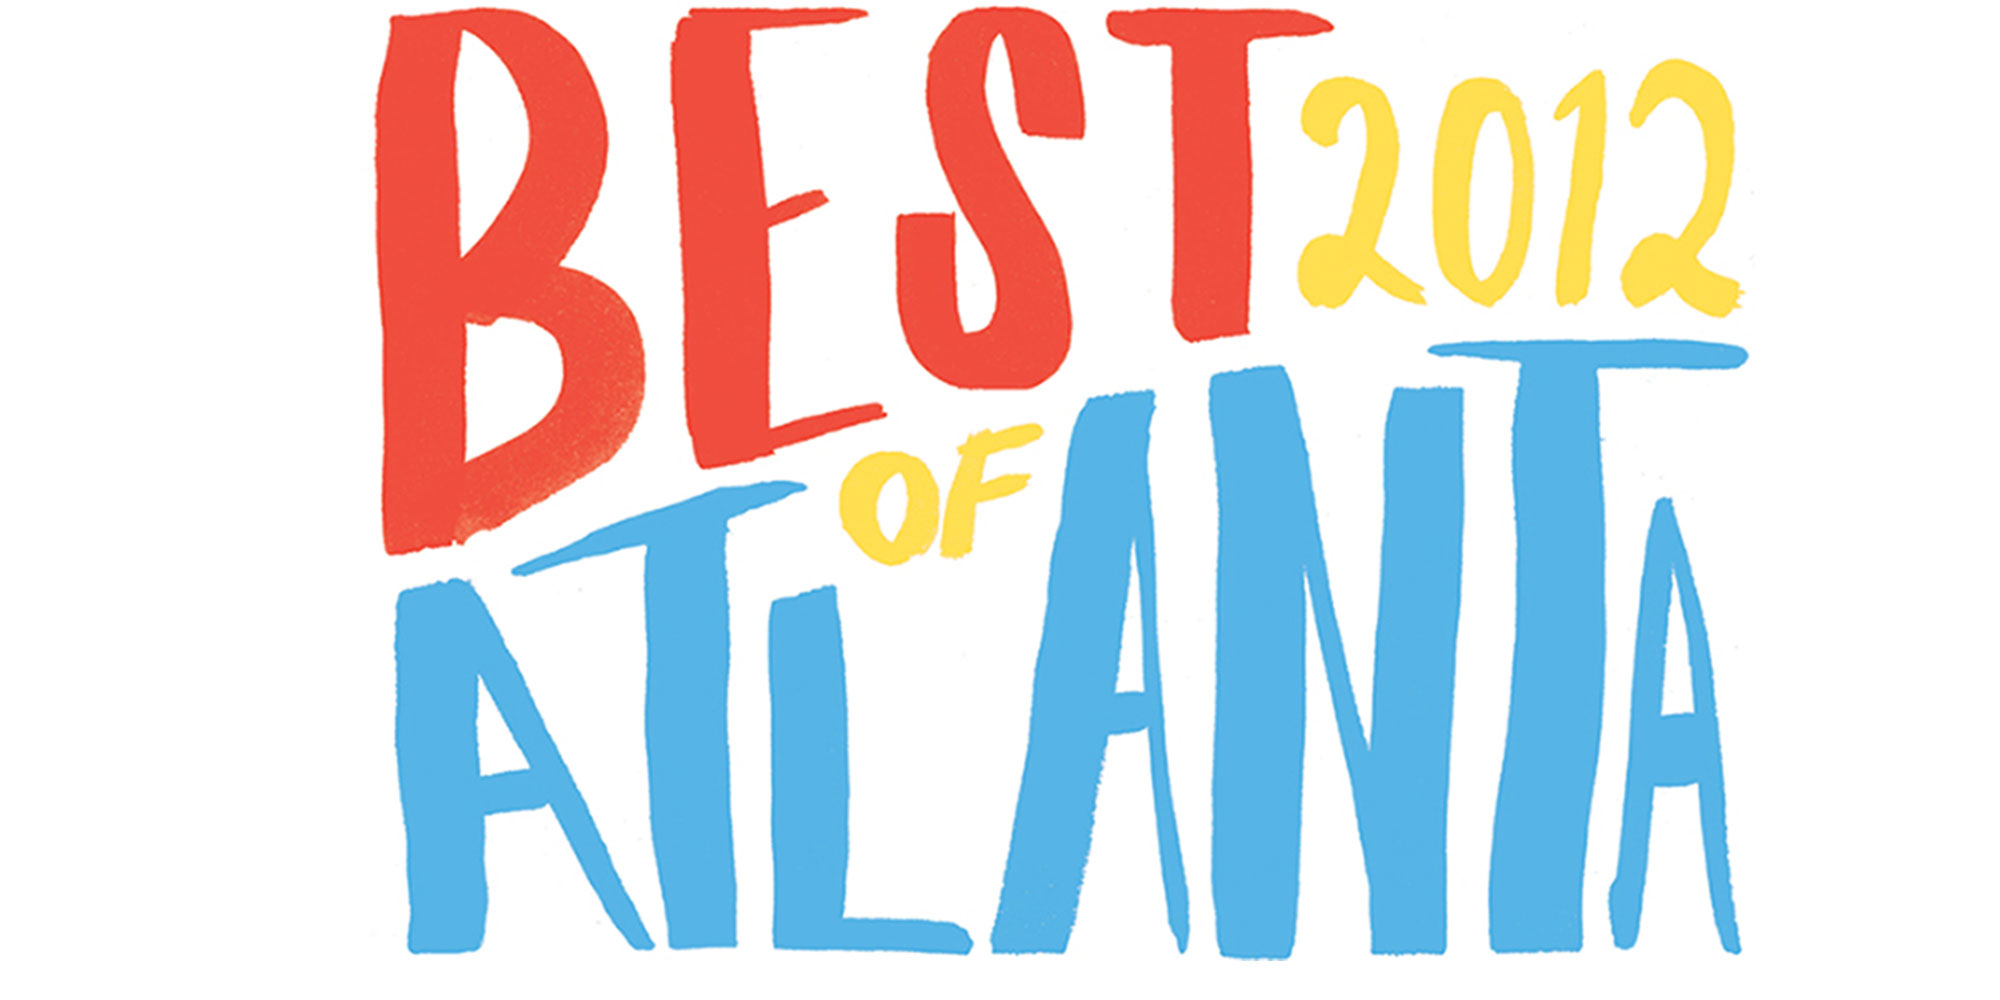 Best Of Atlanta Main Photo (large)